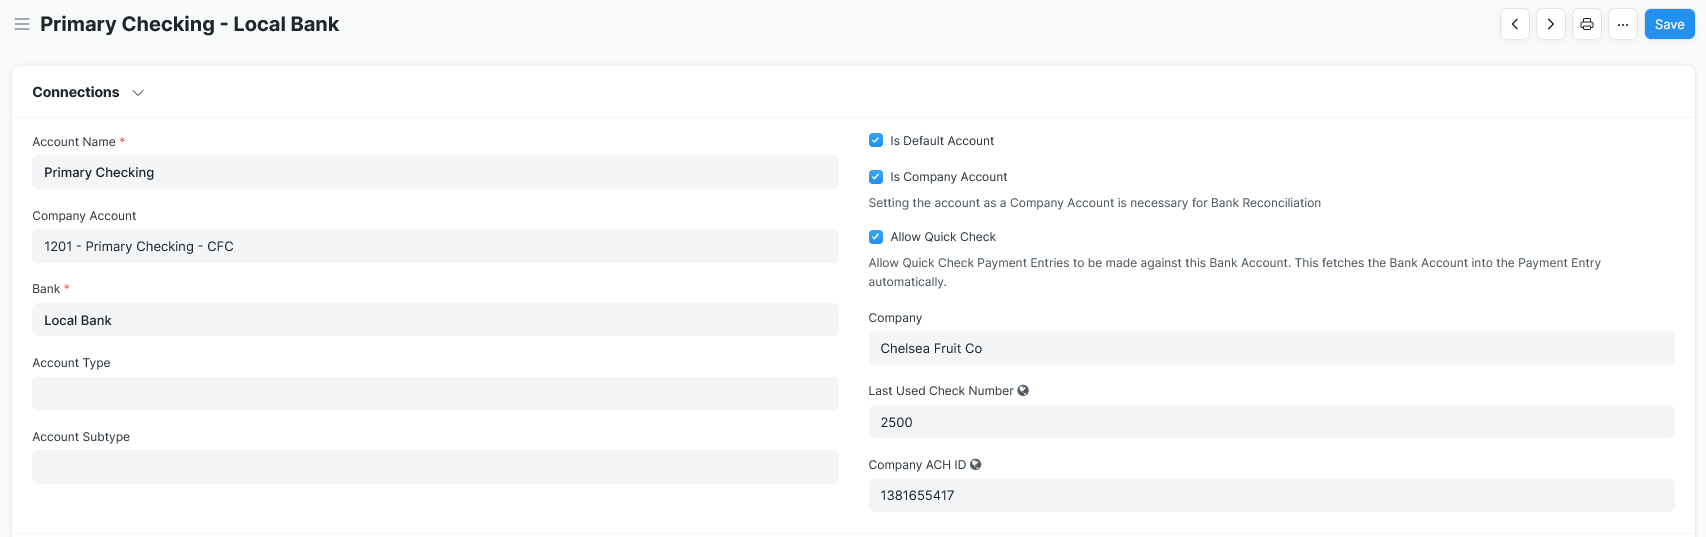 Screen shot showing Bank Account Settings